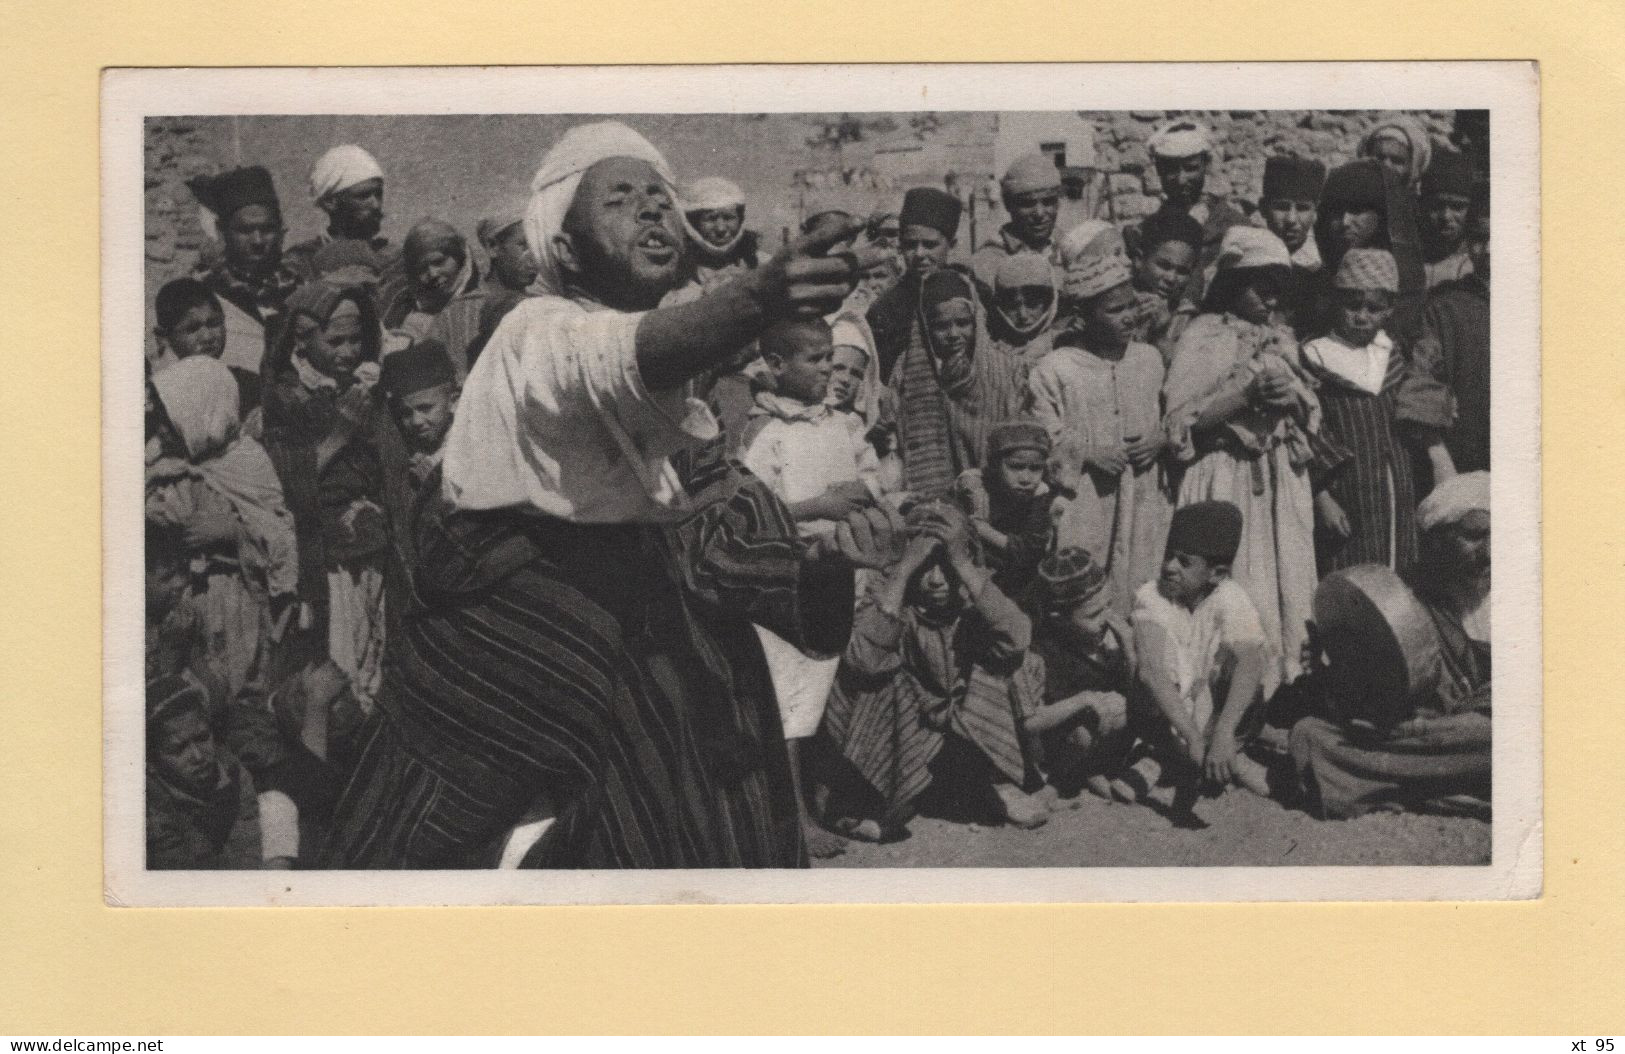 Maroc Espagnol - 1951 - Carte Plasmarine Ionyl - Le Conteur D Histoires - Marocco Spagnolo